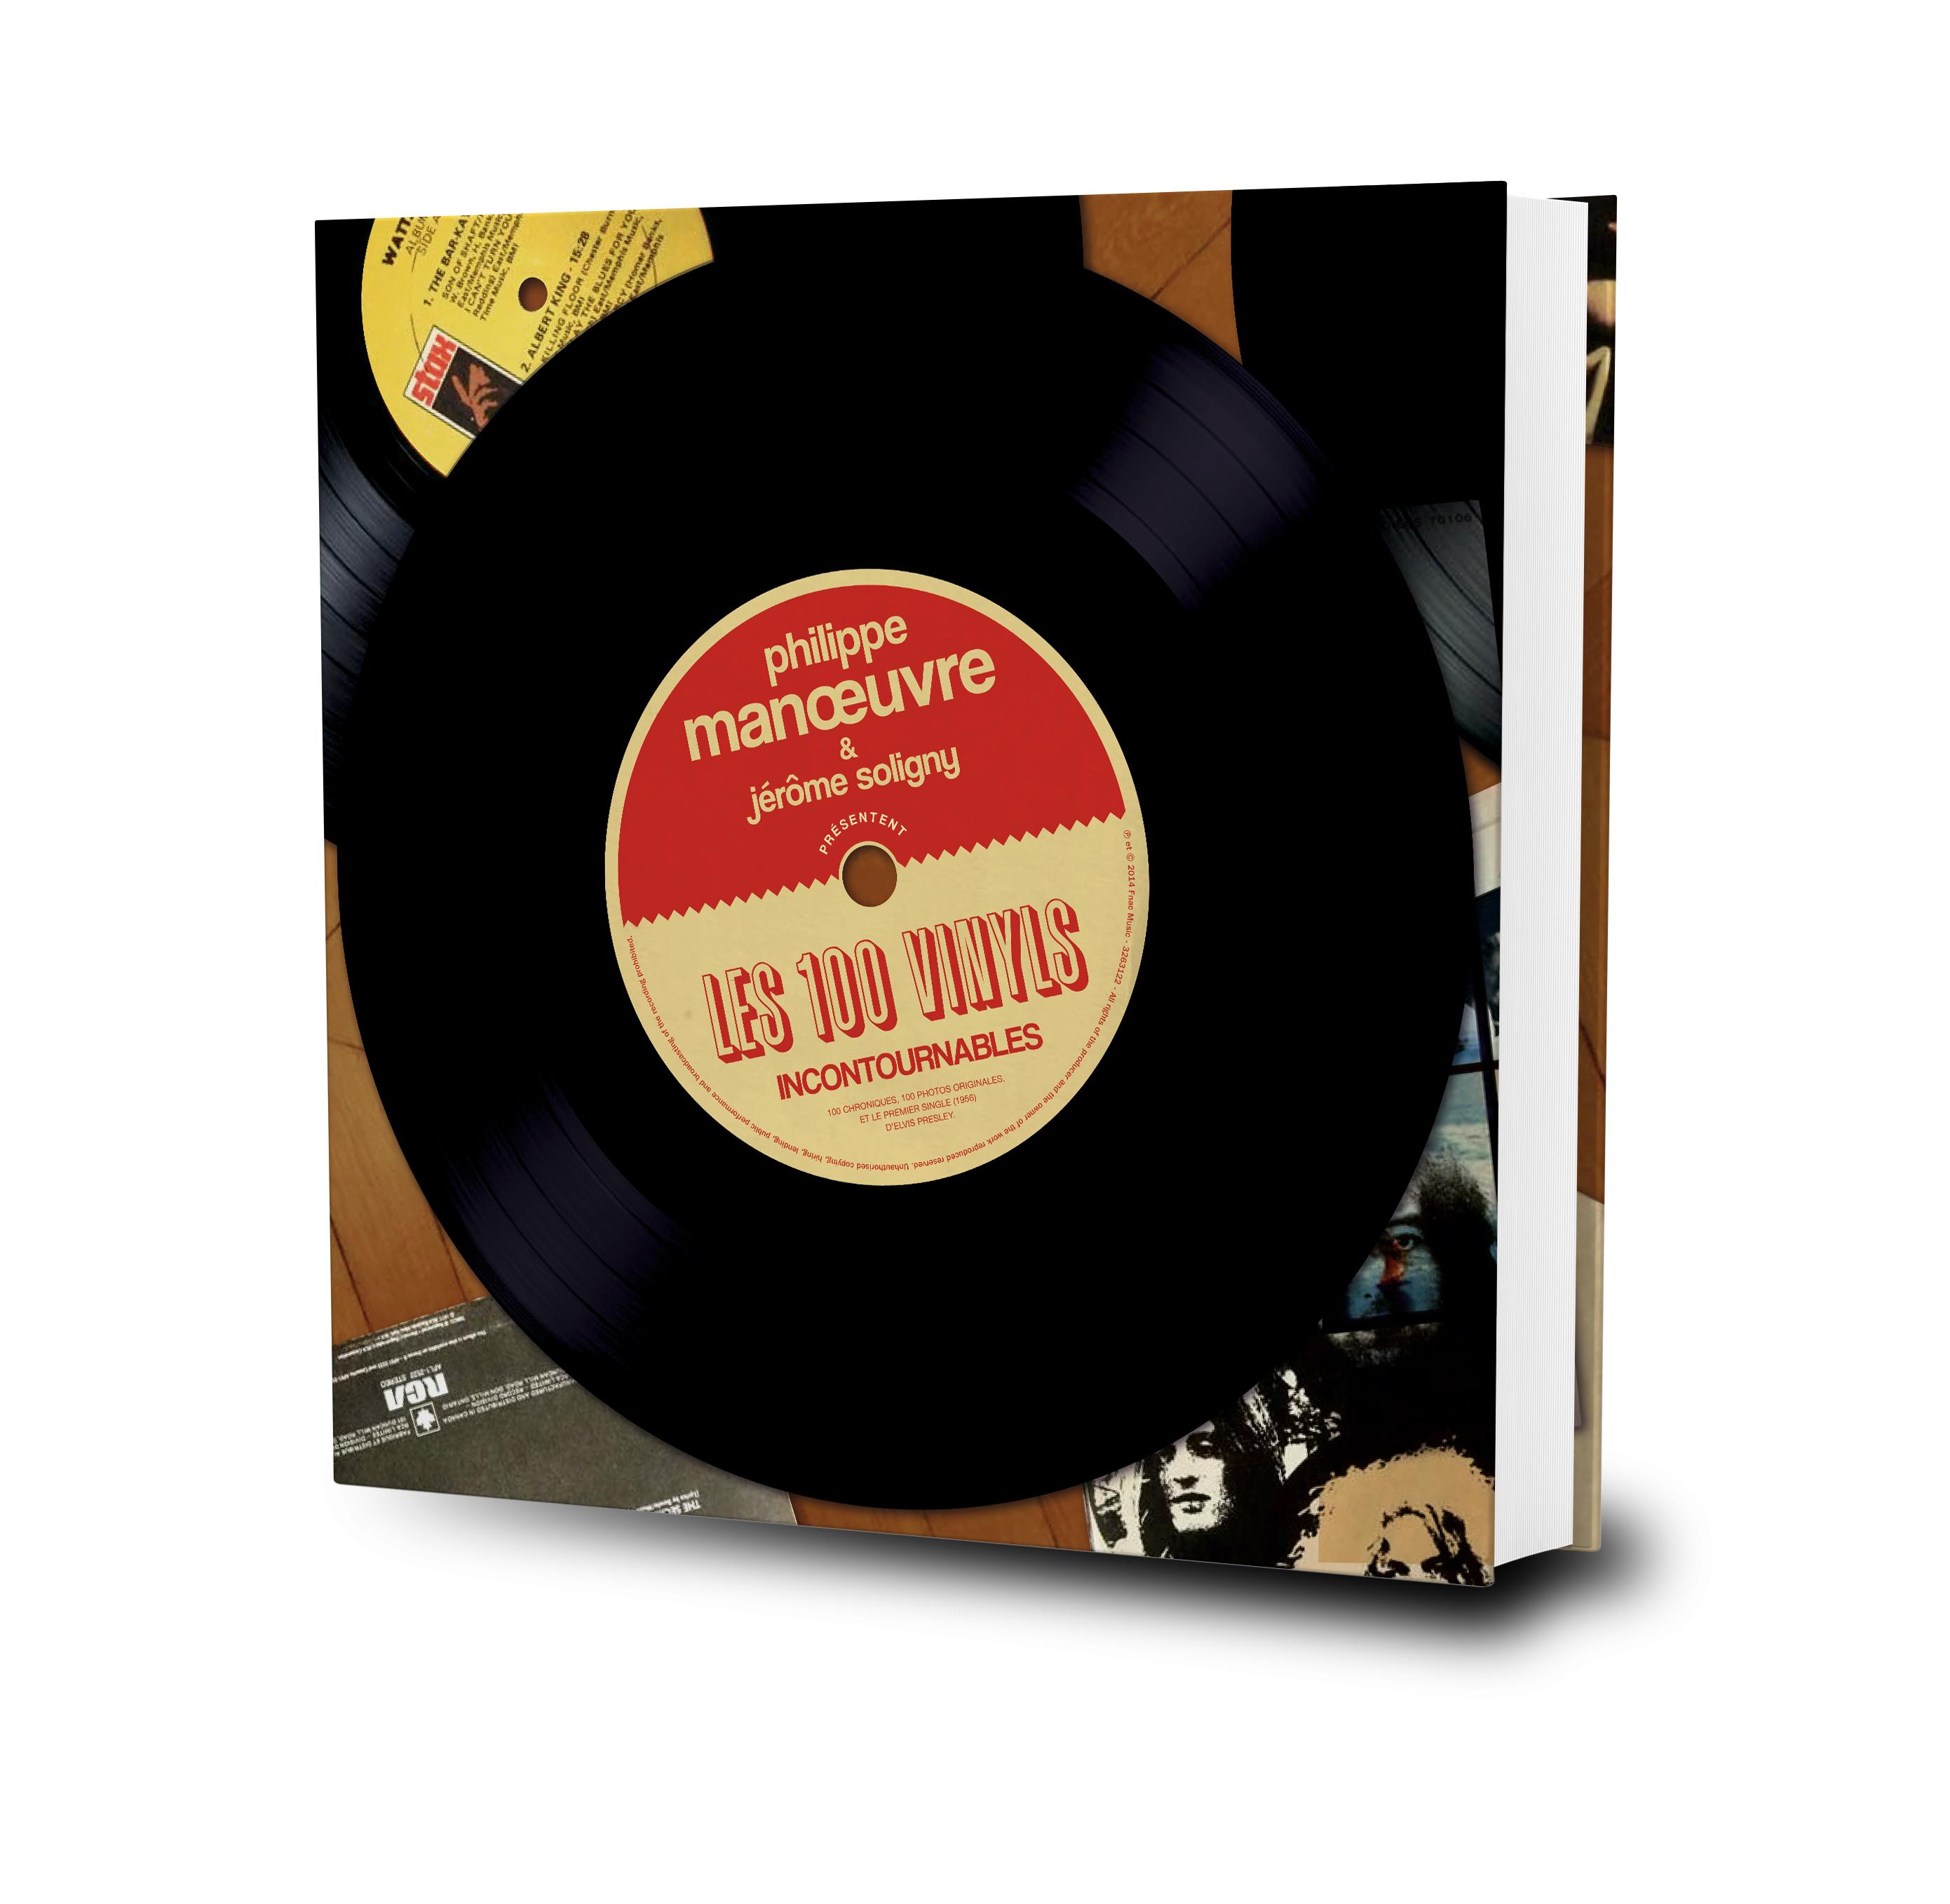 3d100vinyl Les 100 Vinyls incontournables – Philippe Manœuvre & Jérôme Soligny